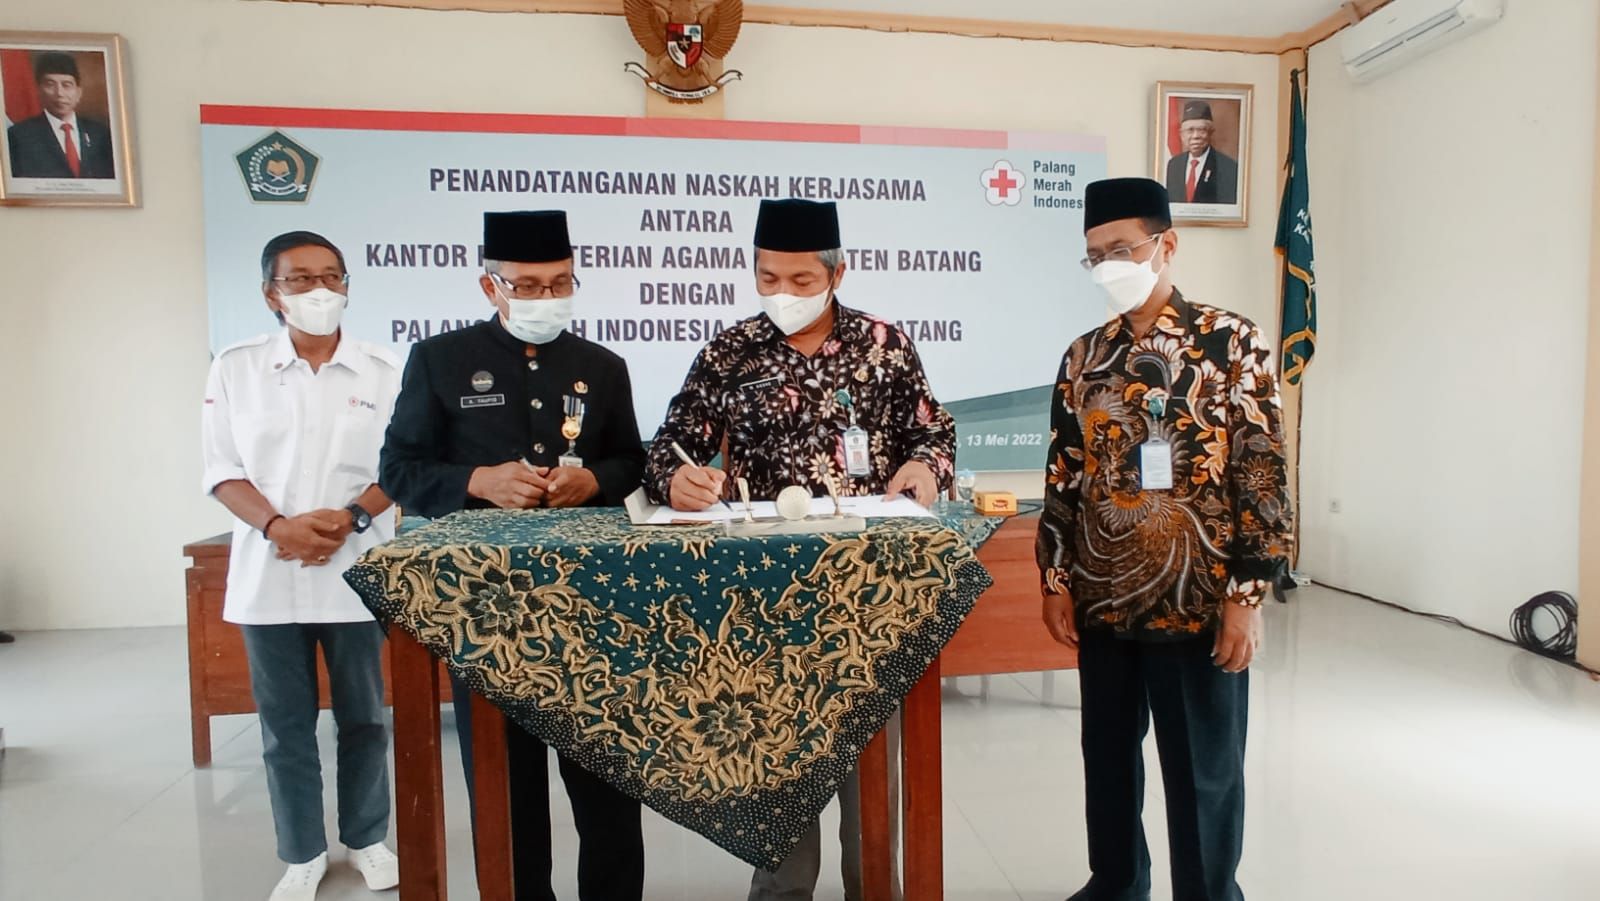 Penandatanganan PMI Kabupaten Batang menjalin kerjasama dan MOU bersama Cabang Dinas Pendidikan Wilayah XIII dan Kementrian Agama Kabupaten Batang.